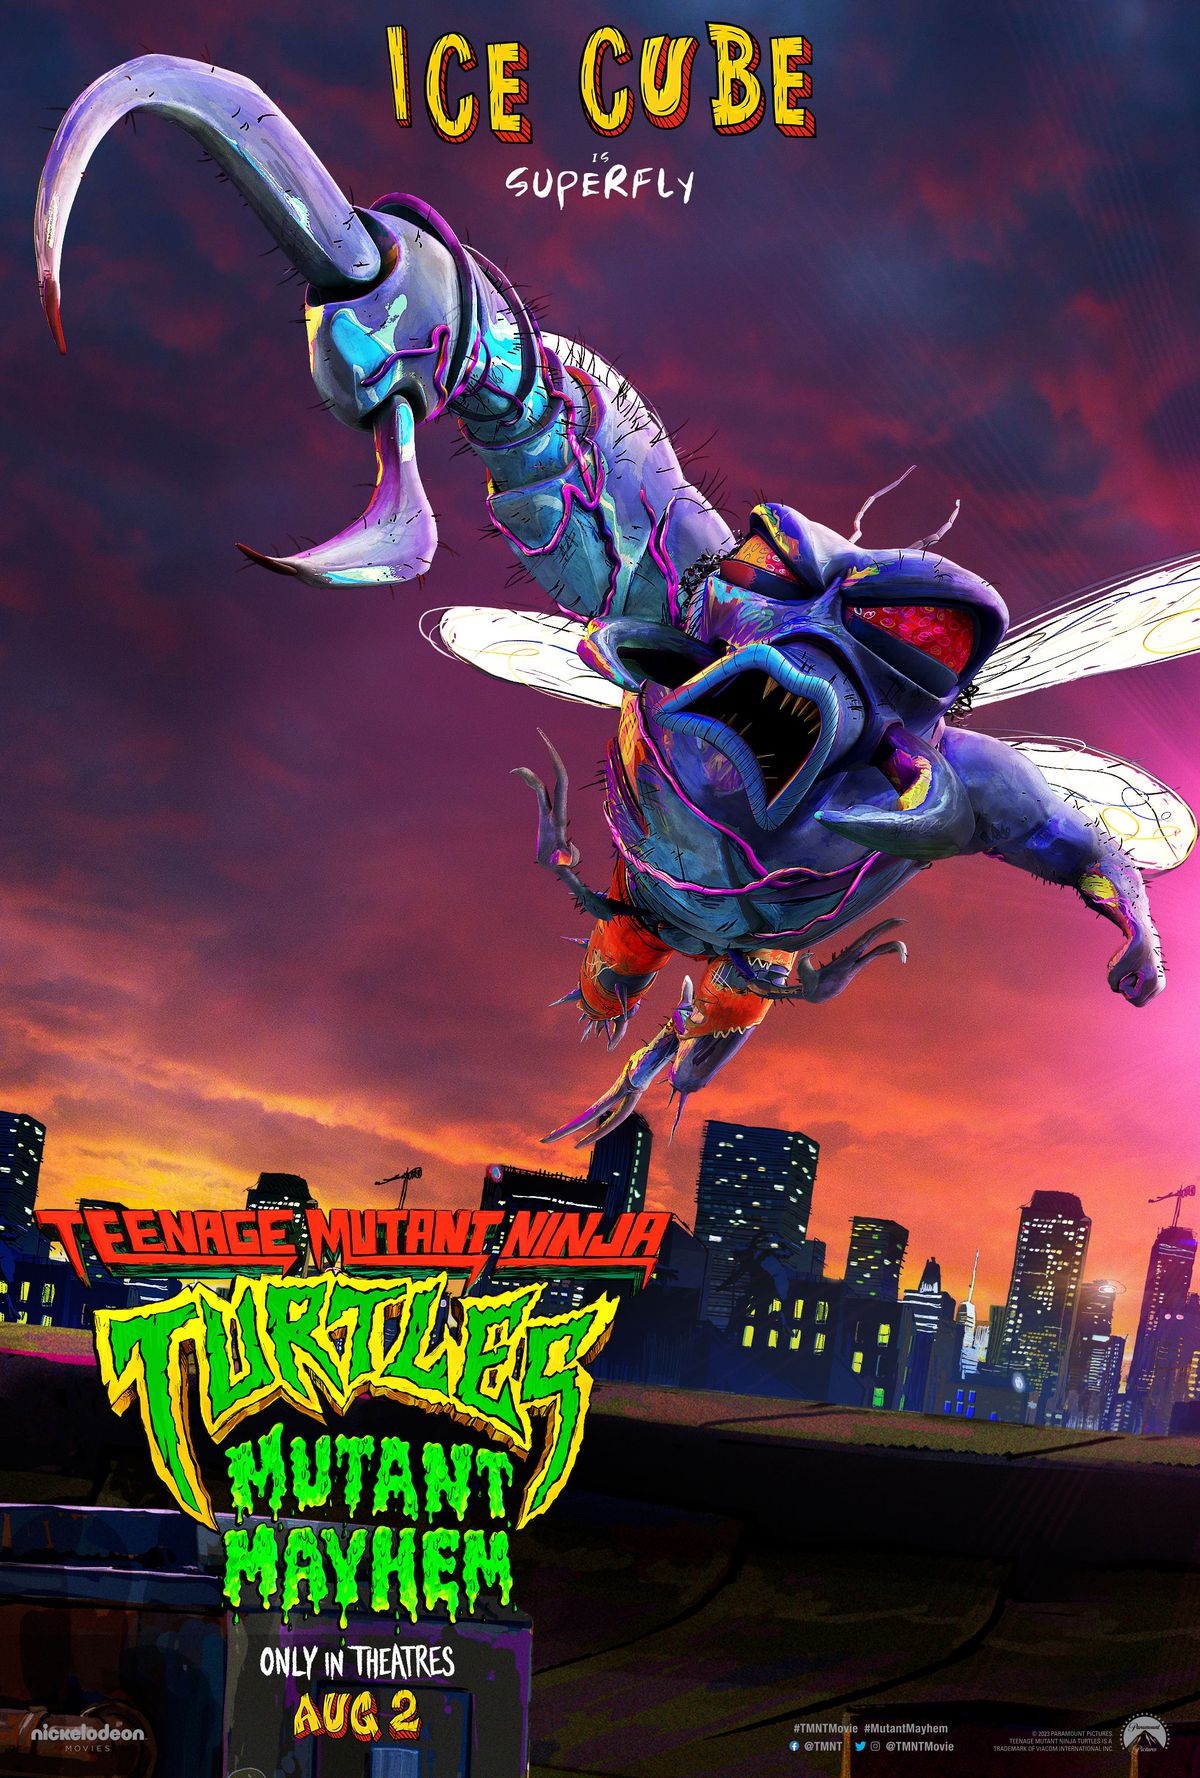 En karaktärsaffisch för Superfly, en grov antropomorf flugman, röstad av Ice Cube, i Teenage Mutant Ninja Turtles: Mutant Mayhem. 